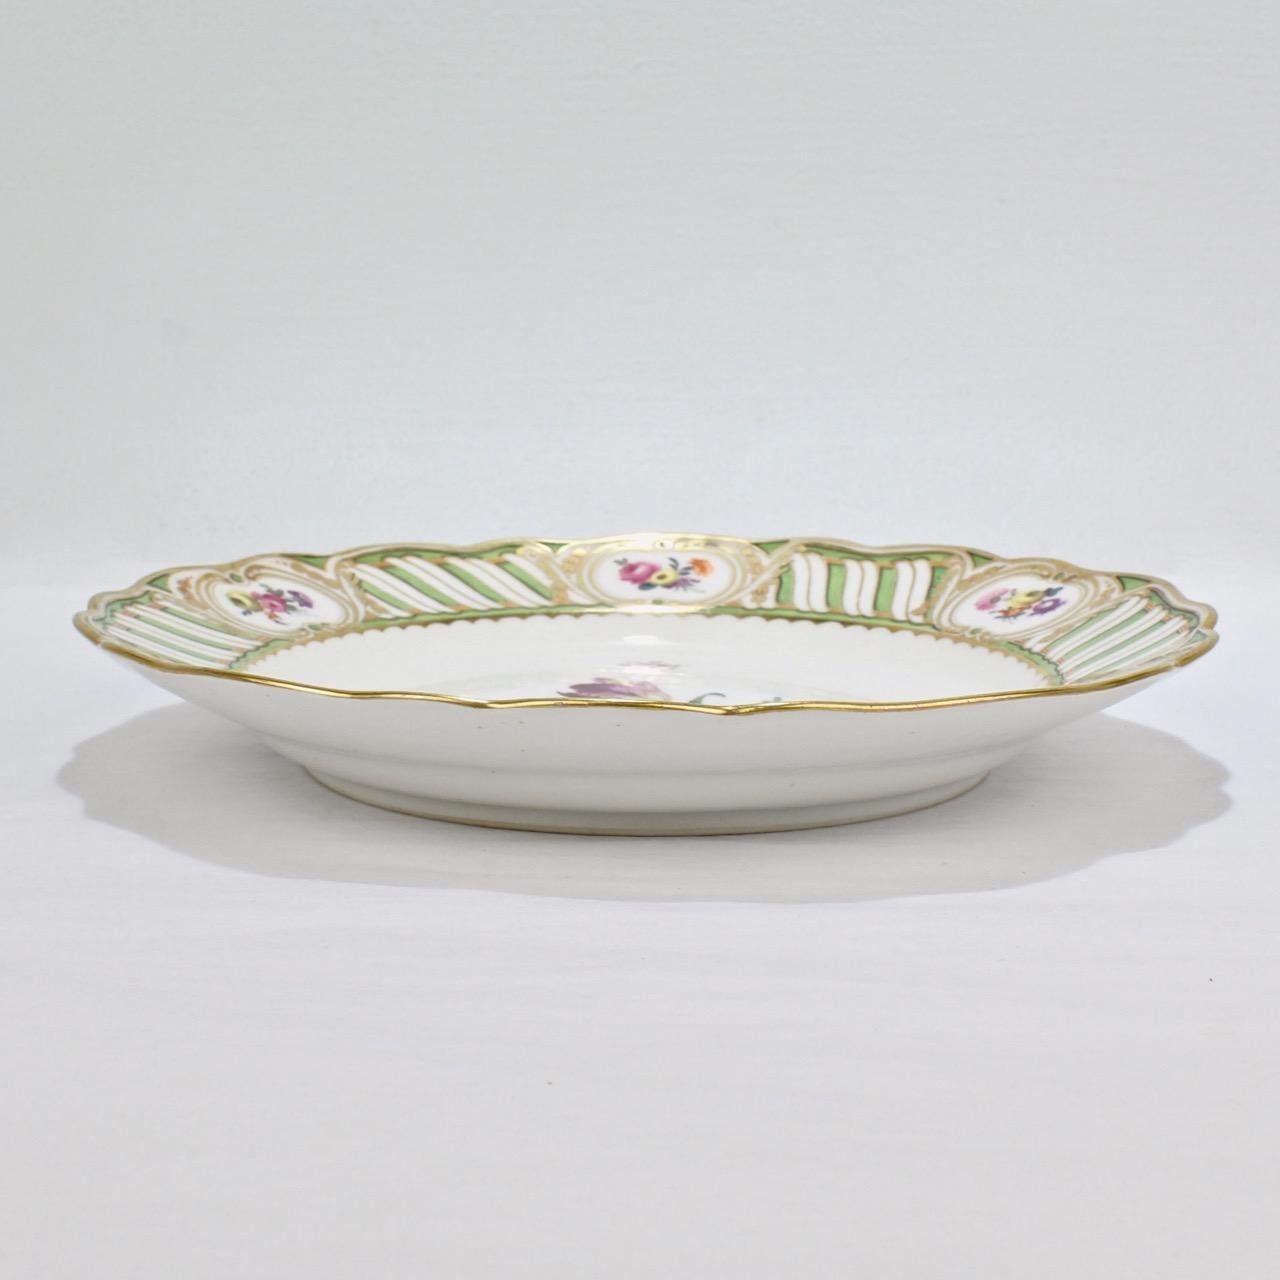 6 Antique Vienna Porcelain Plates with Green Borders & Deutsche Blumen Flowers 6